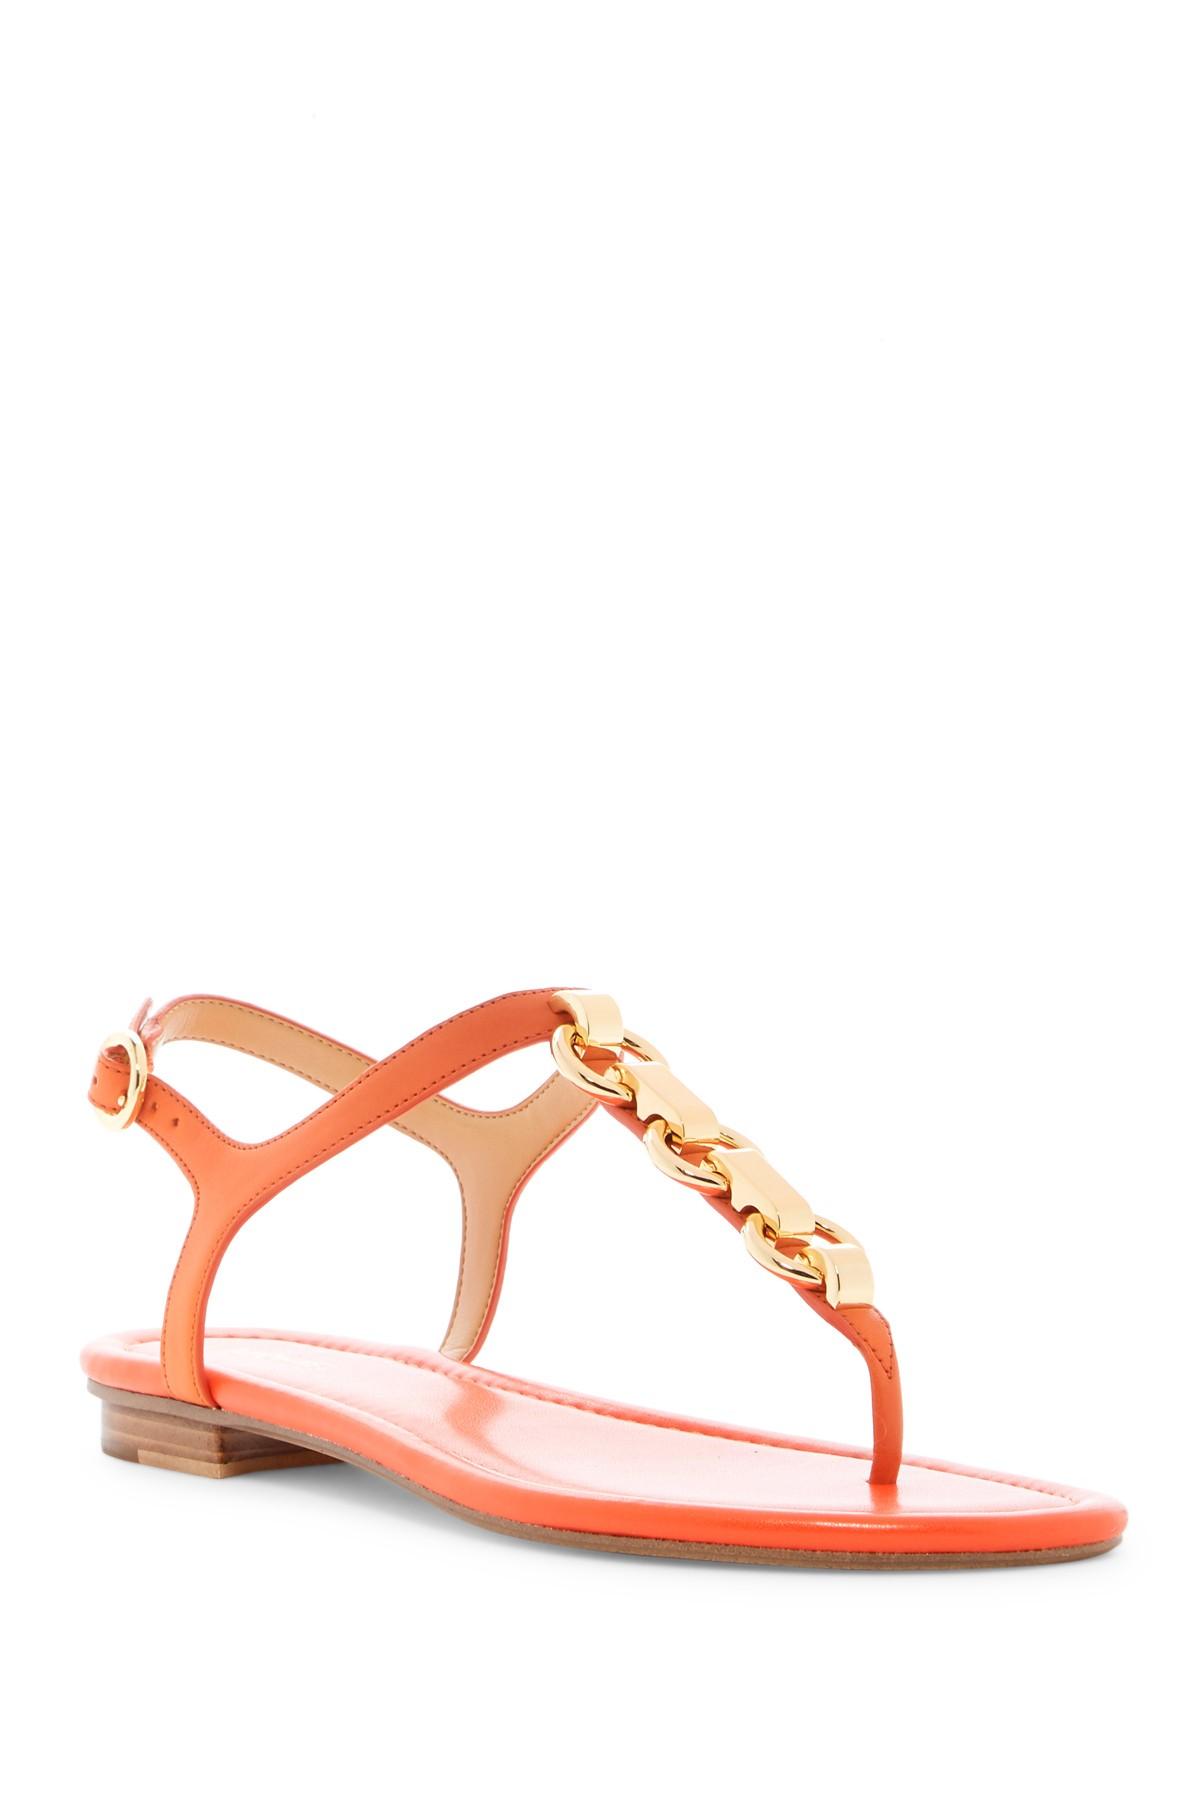 MICHAEL Michael Kors Mahari T-strap Sandal in Orange | Lyst